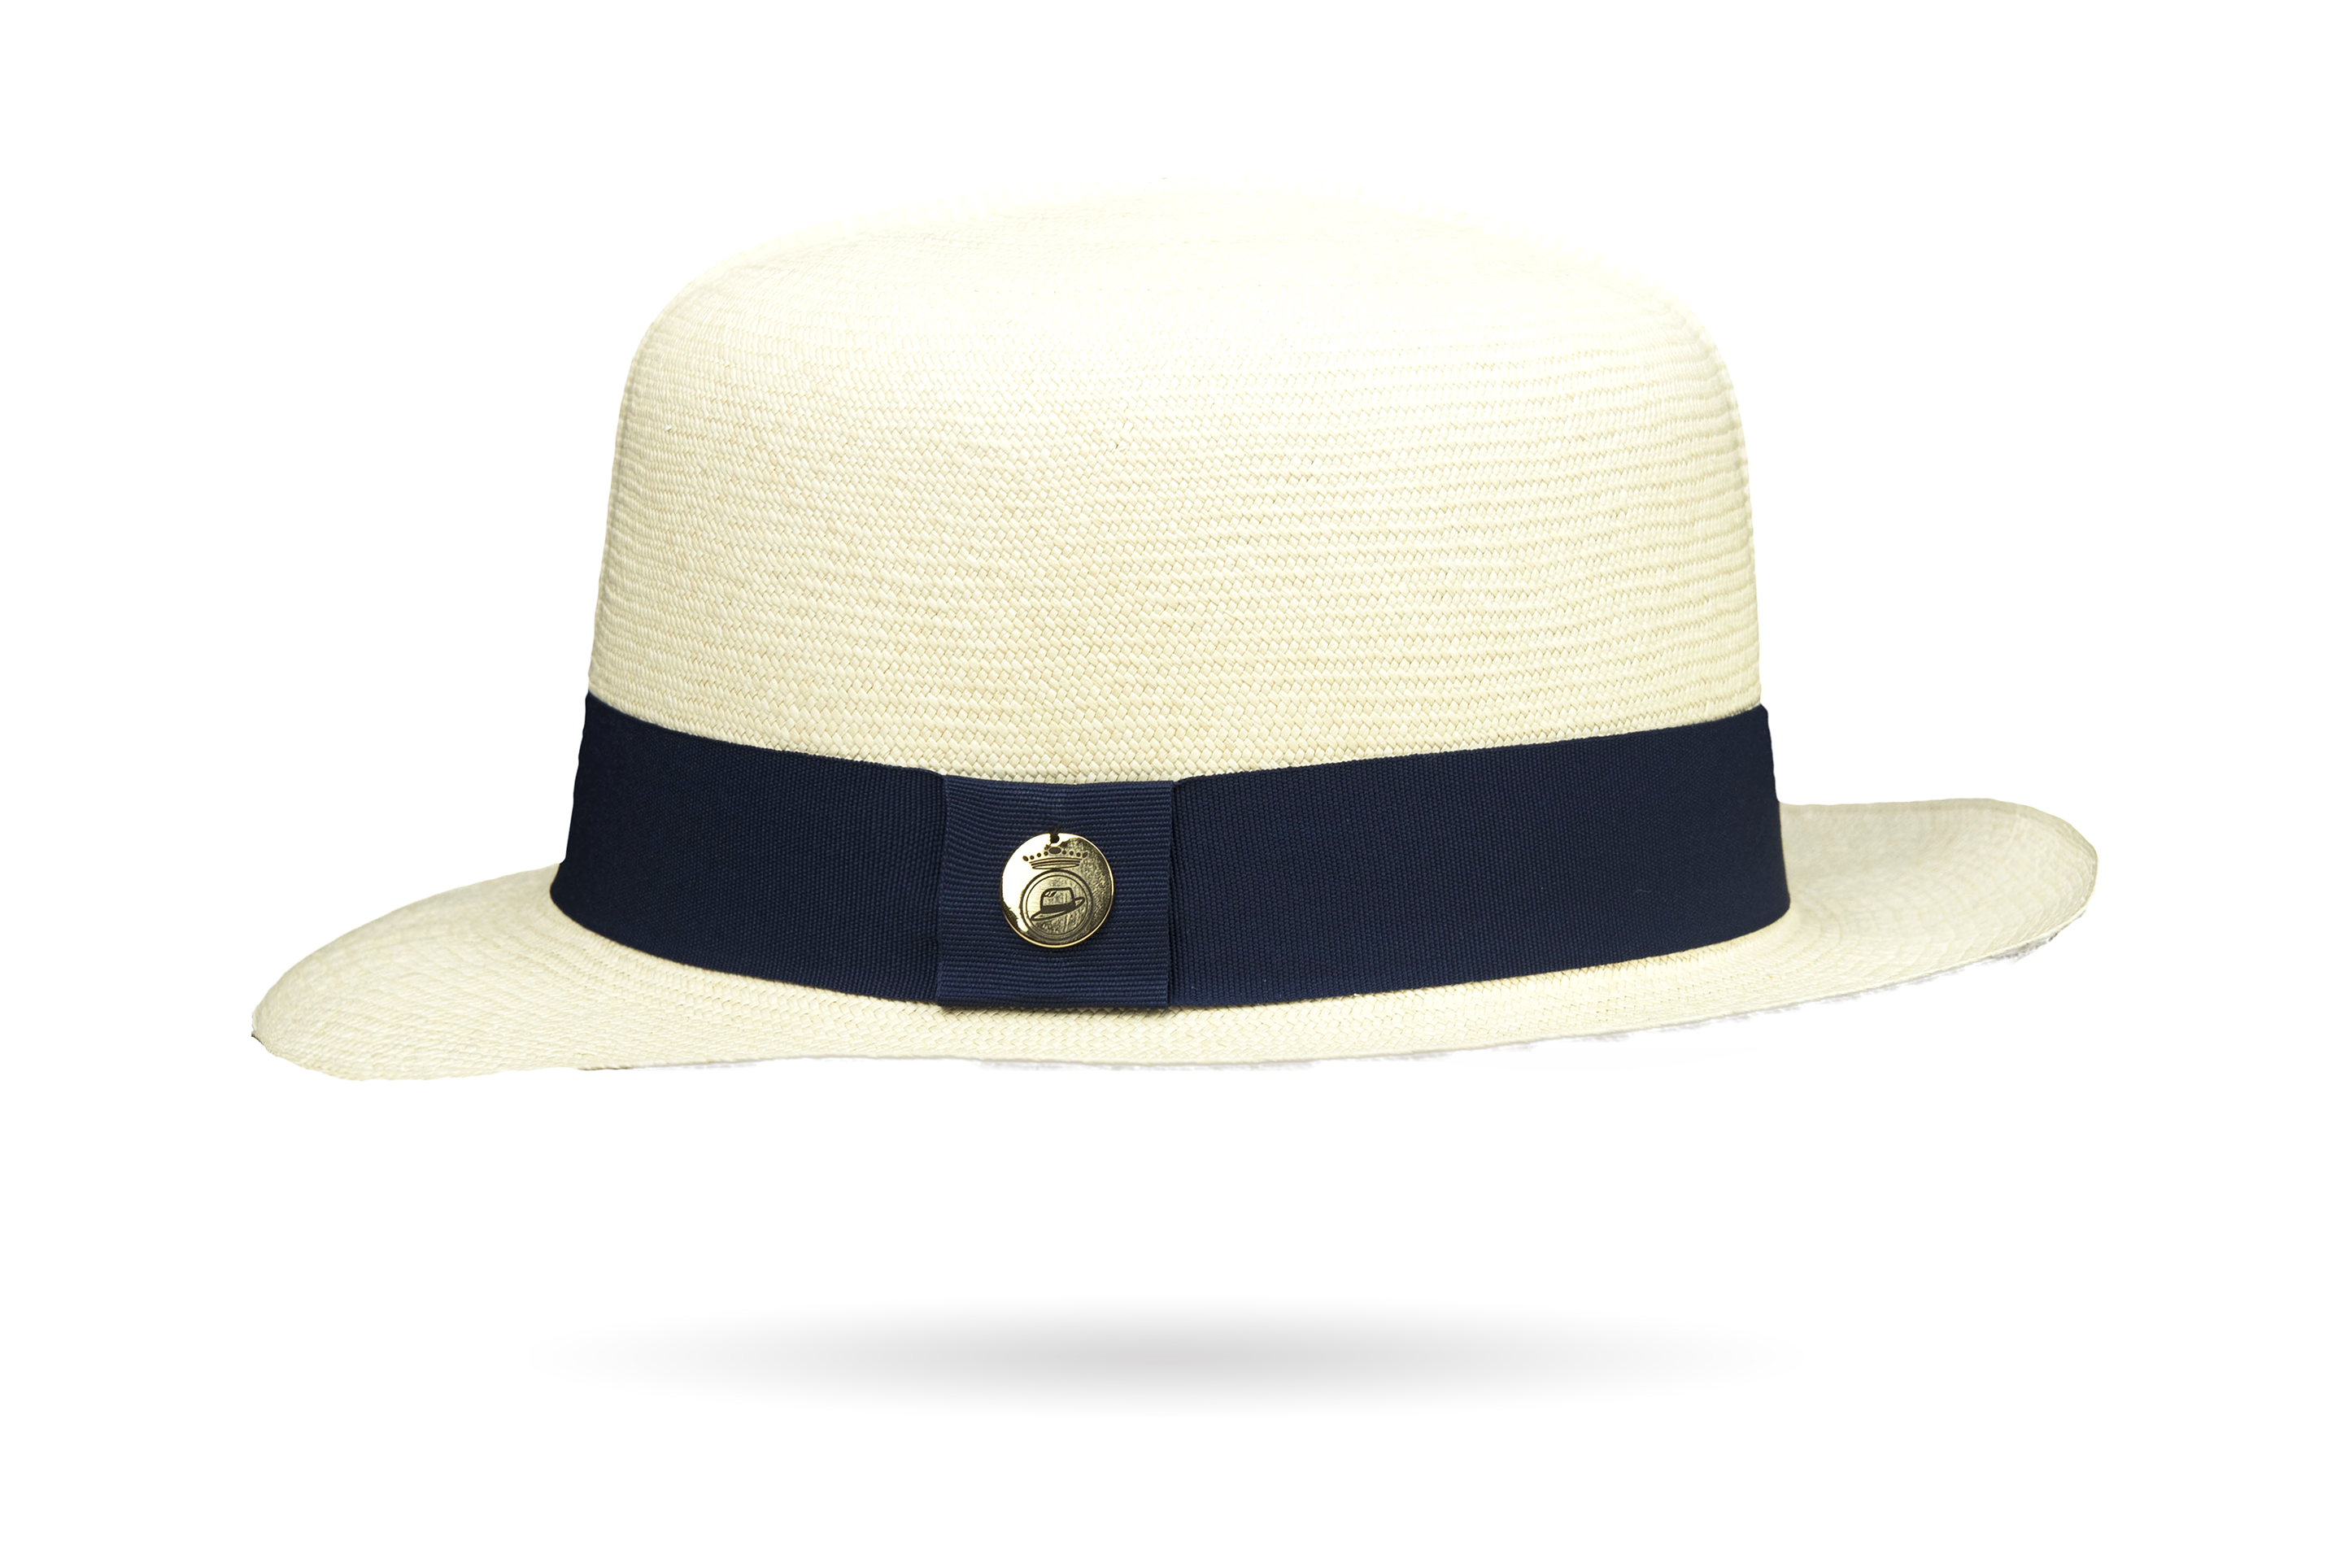 Prescious Extrafino Ii Montecristi Hat Optimo Creased Crown - Grade 20-22 Montecristi Panama